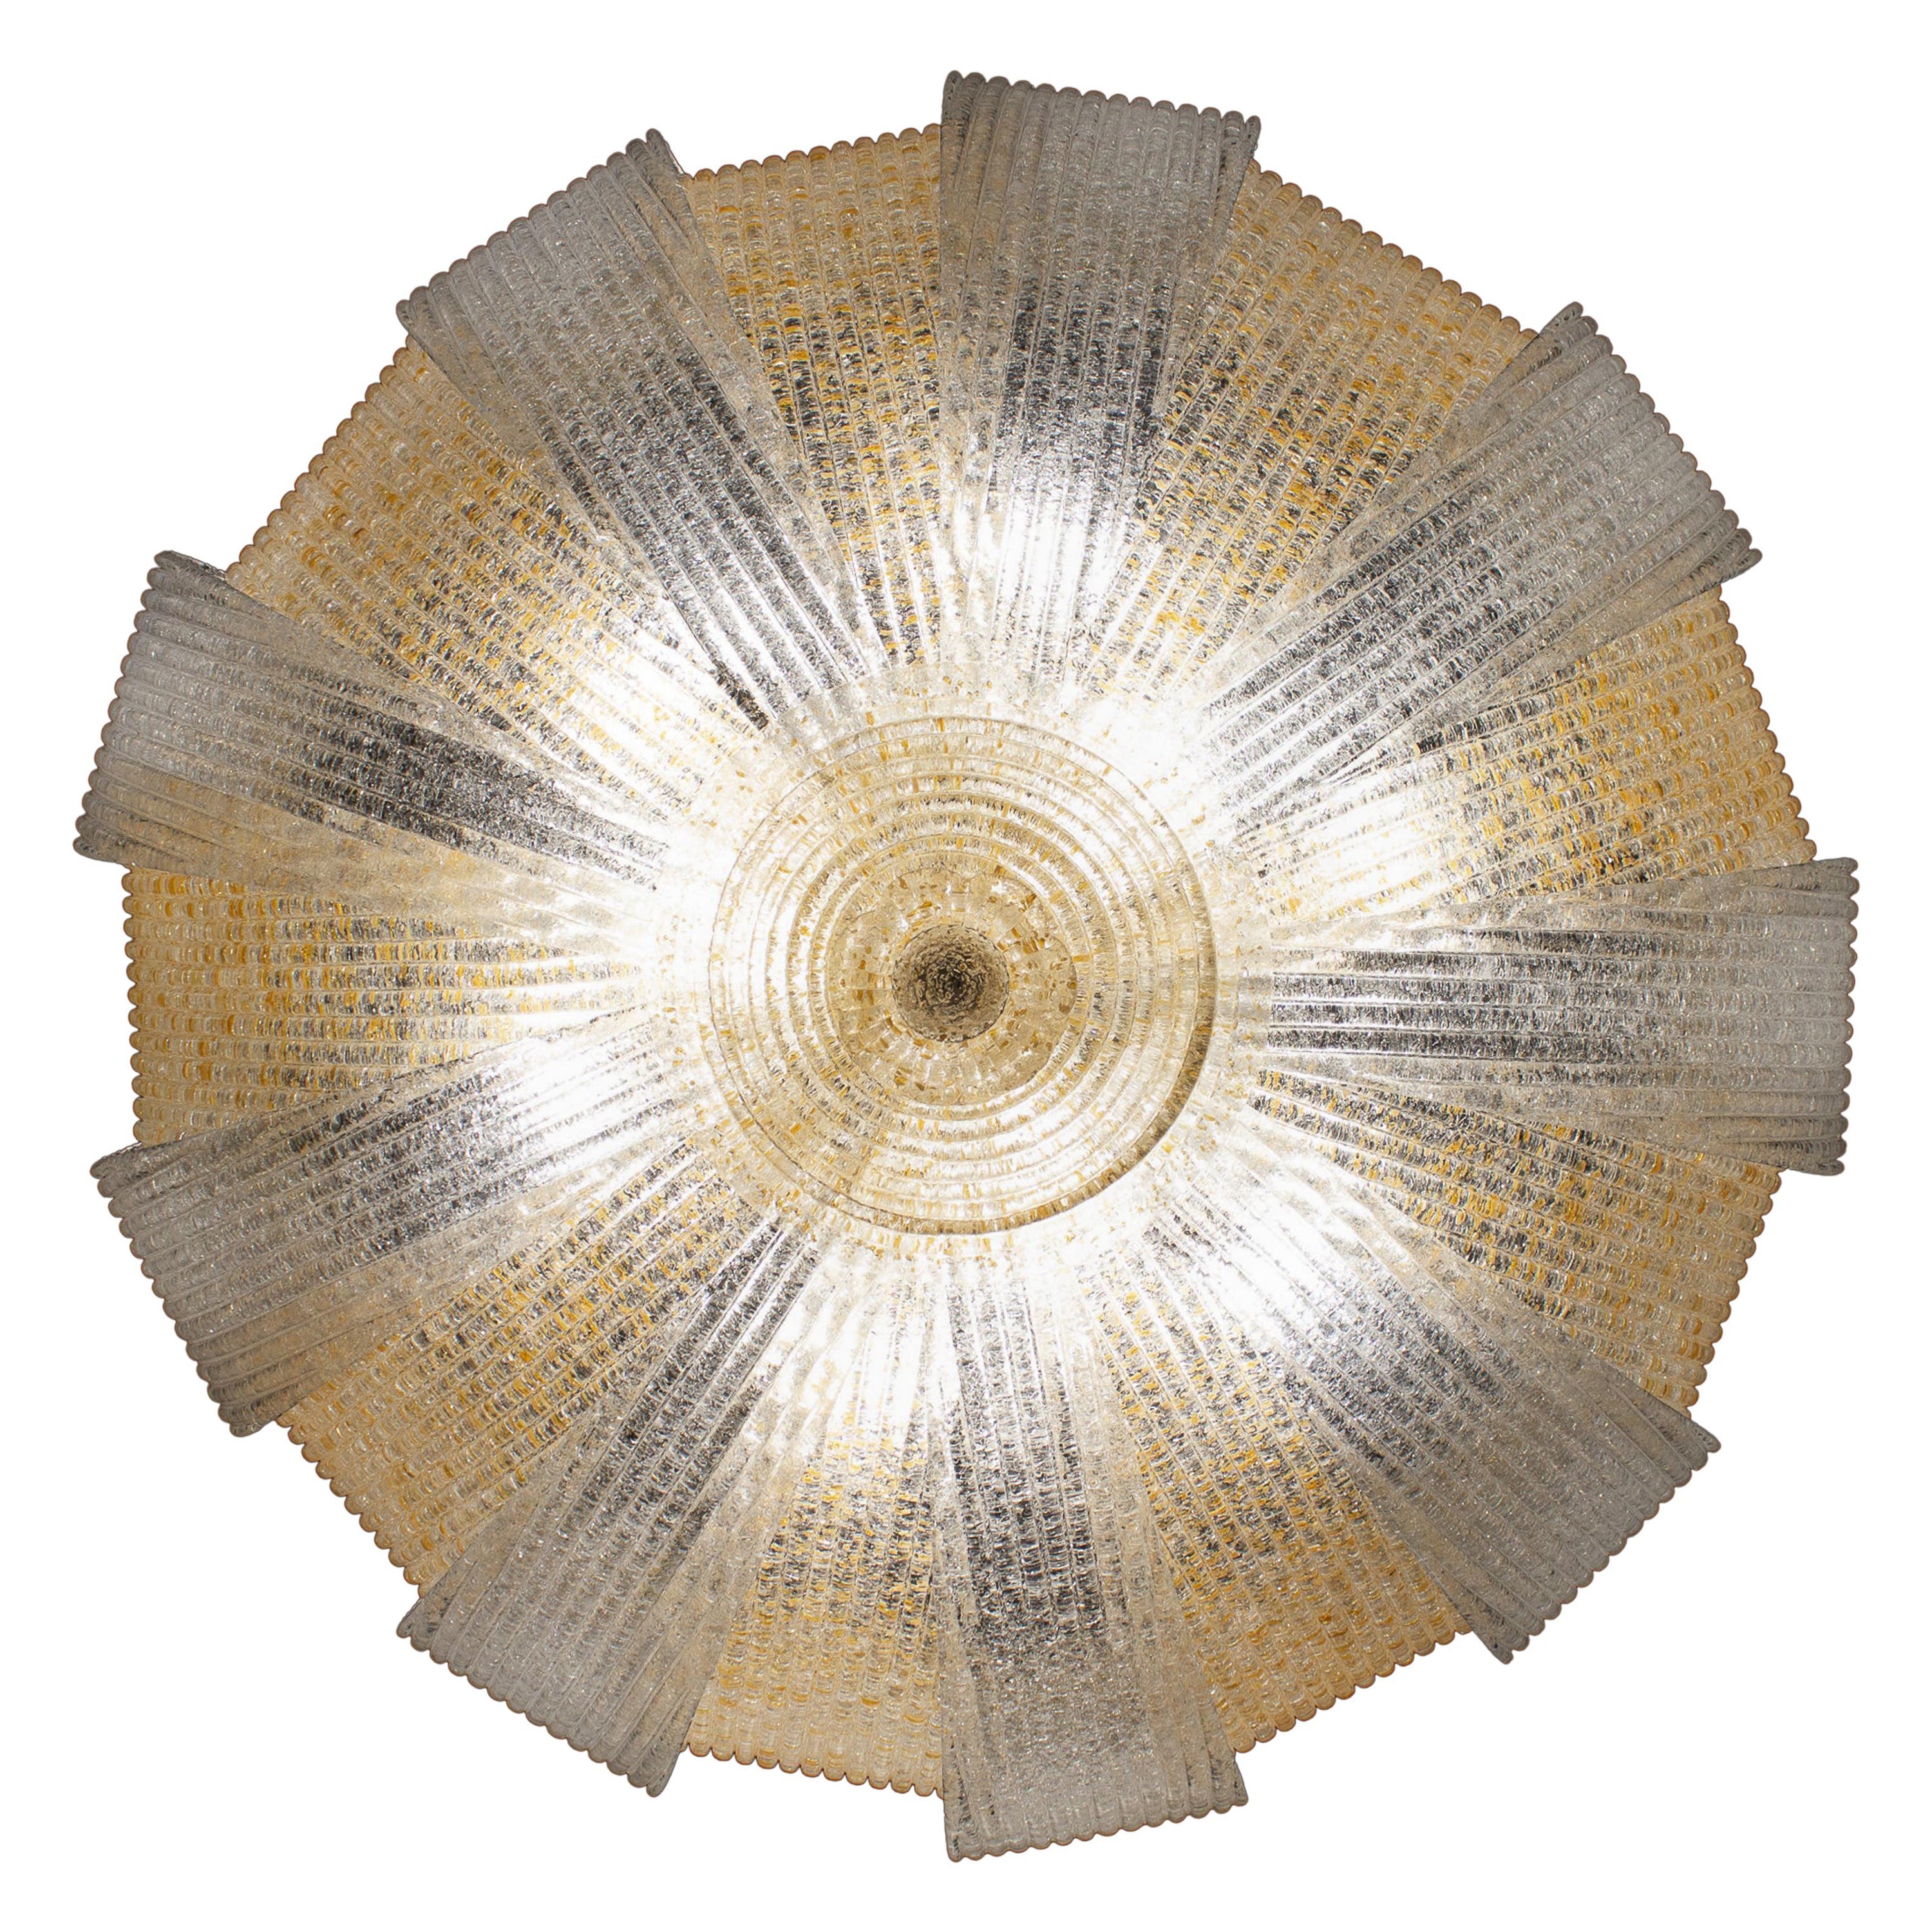 Exklusive Produktion mit kostbaren Murano-Glasblättern mit Goldeinlage, die einen fabelhaften Lichteffekt erzeugen.
Auch mit eisfarbenen Gläsern erhältlich.
Rahmen; vergoldet oder vernickelt.
Sechs Glühbirnen E 27. Wir können für Ihr Land Standards